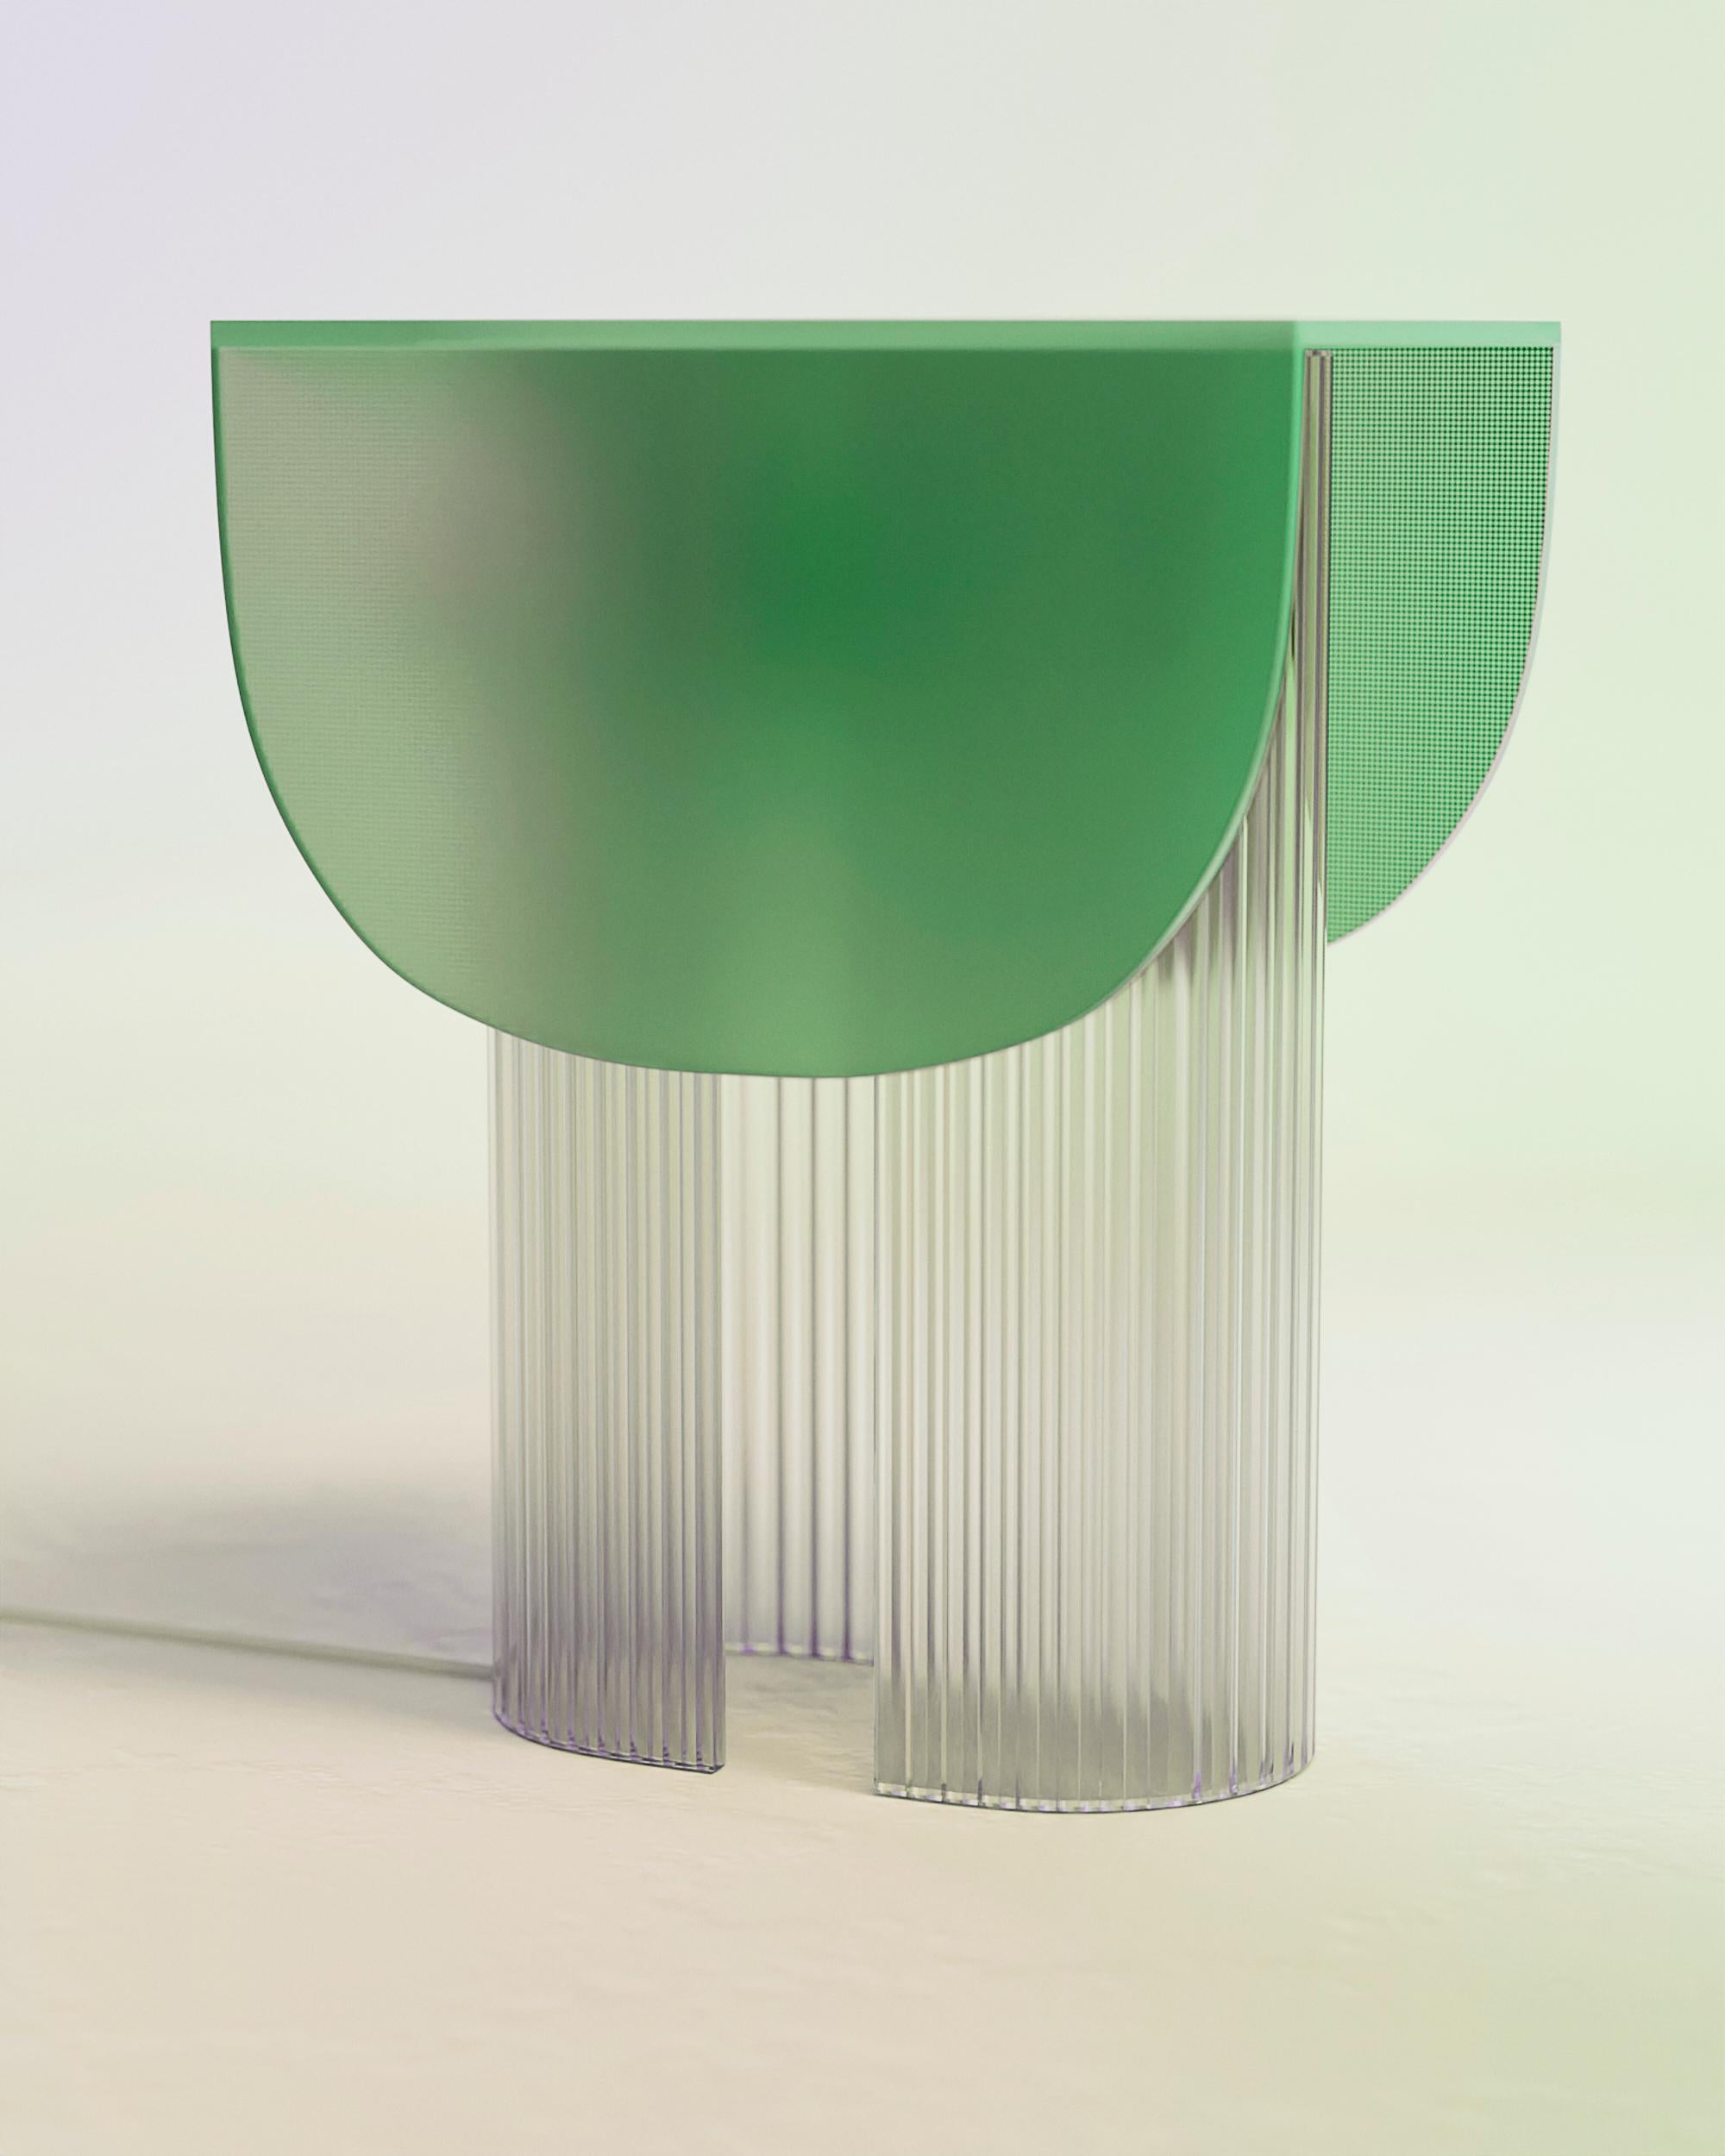 Nature Green Helia-Tischlampe aus Naturglas von Glas Variations
Abmessungen: B 22 x T 31 x H 40 cm
MATERIALIEN: Glas.

Mit dieser Tischleuchte aus 100% Glas feiert Bina Baitel das Licht und die Sonne. Die gewölbte, gemusterte Glasstruktur und die